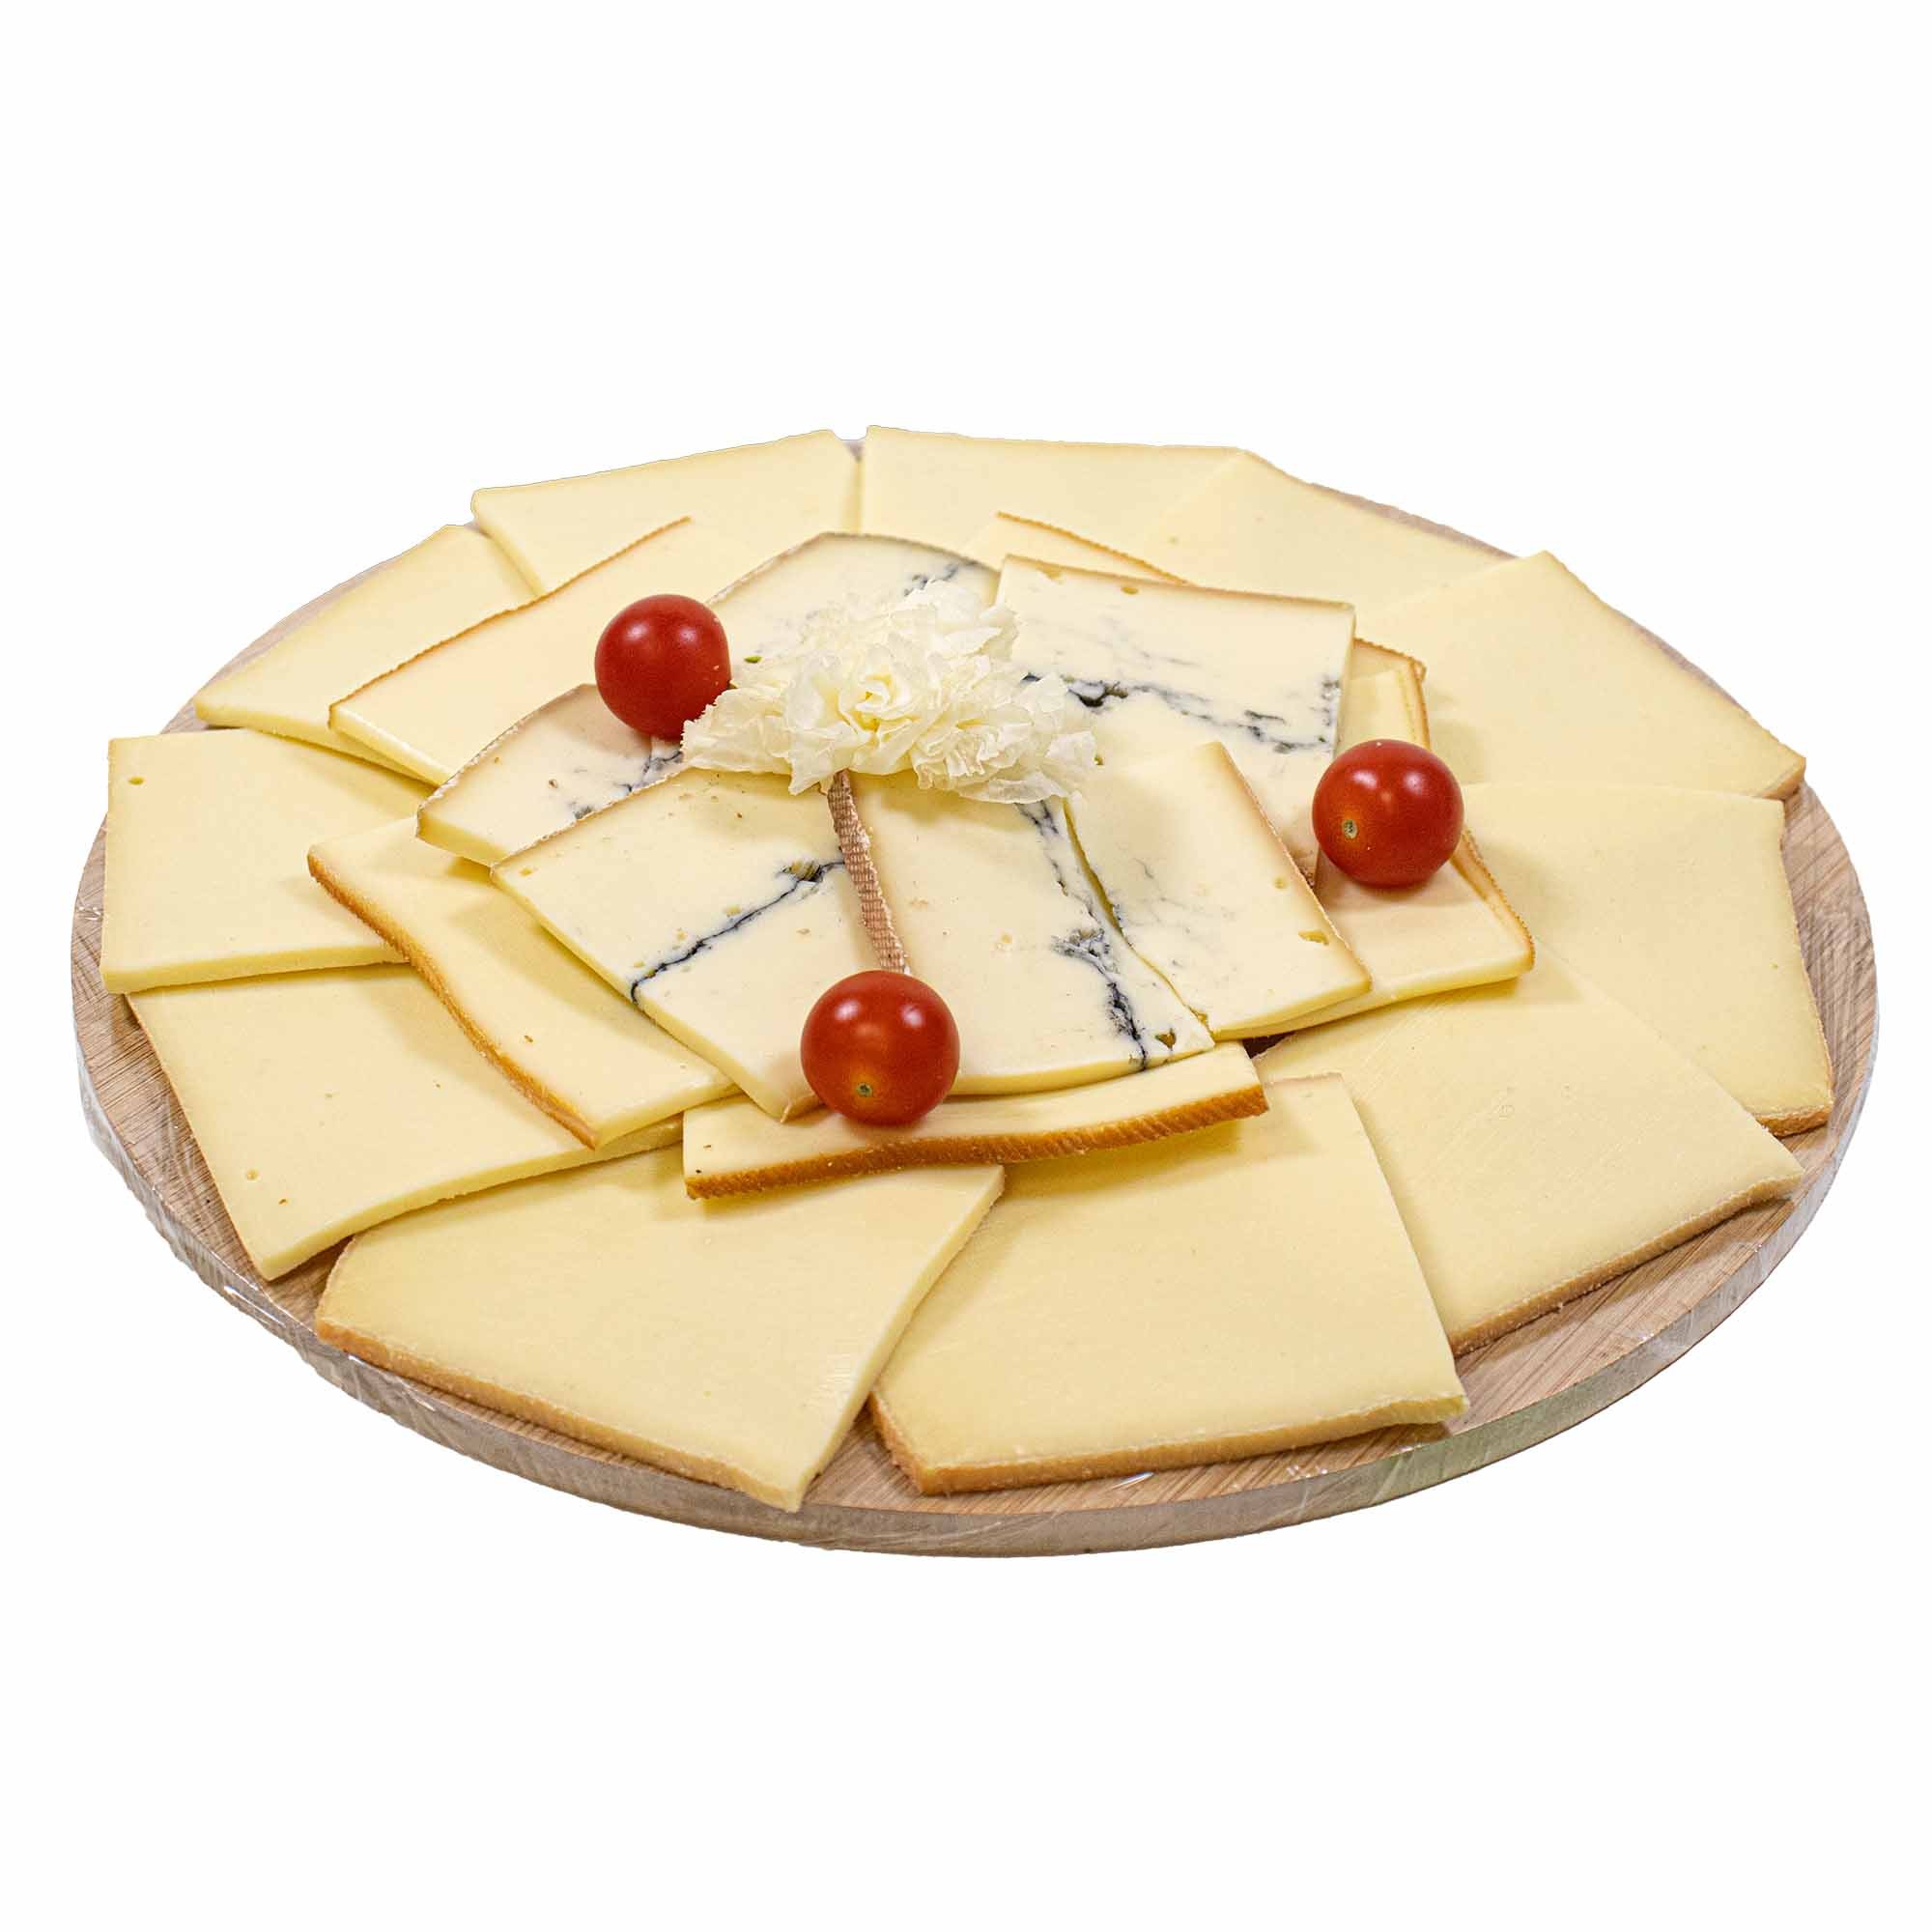 Plateau apéritif fromage & charcuterie 2020002451301 : Traiteur Landerneau